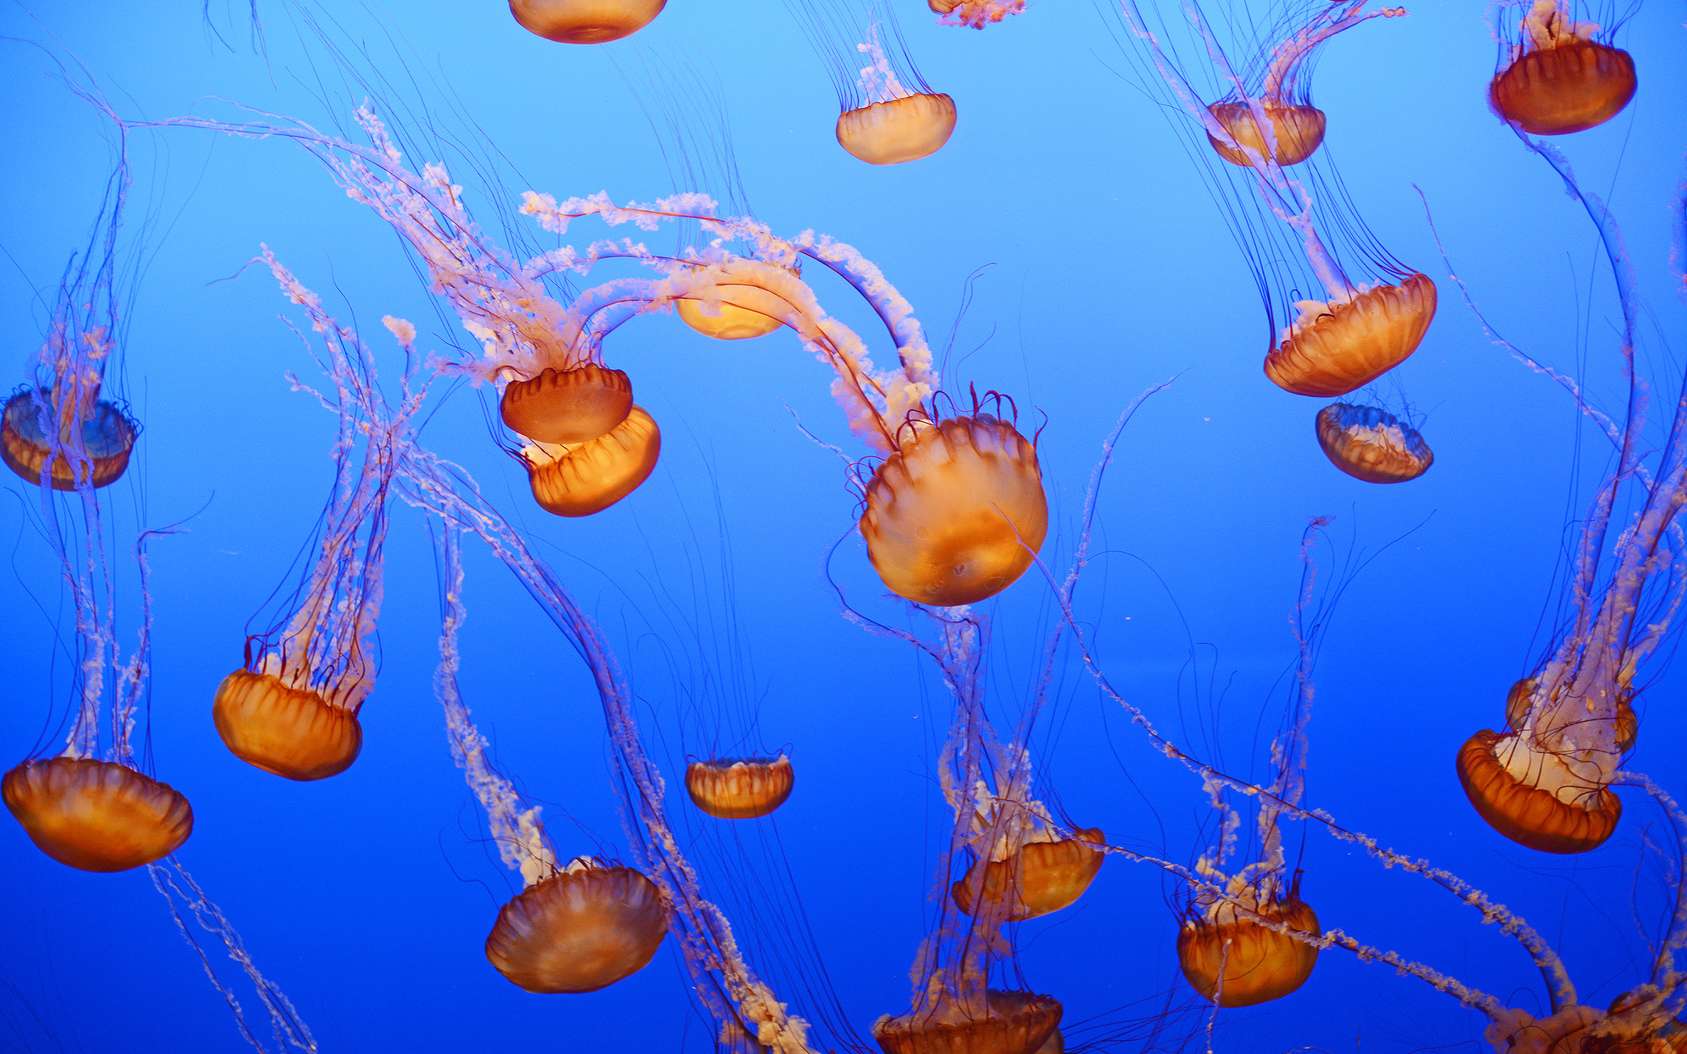 Le bal gracieux des méduses à l'aquarium de Monterey Bay. © portibal, Fotolia